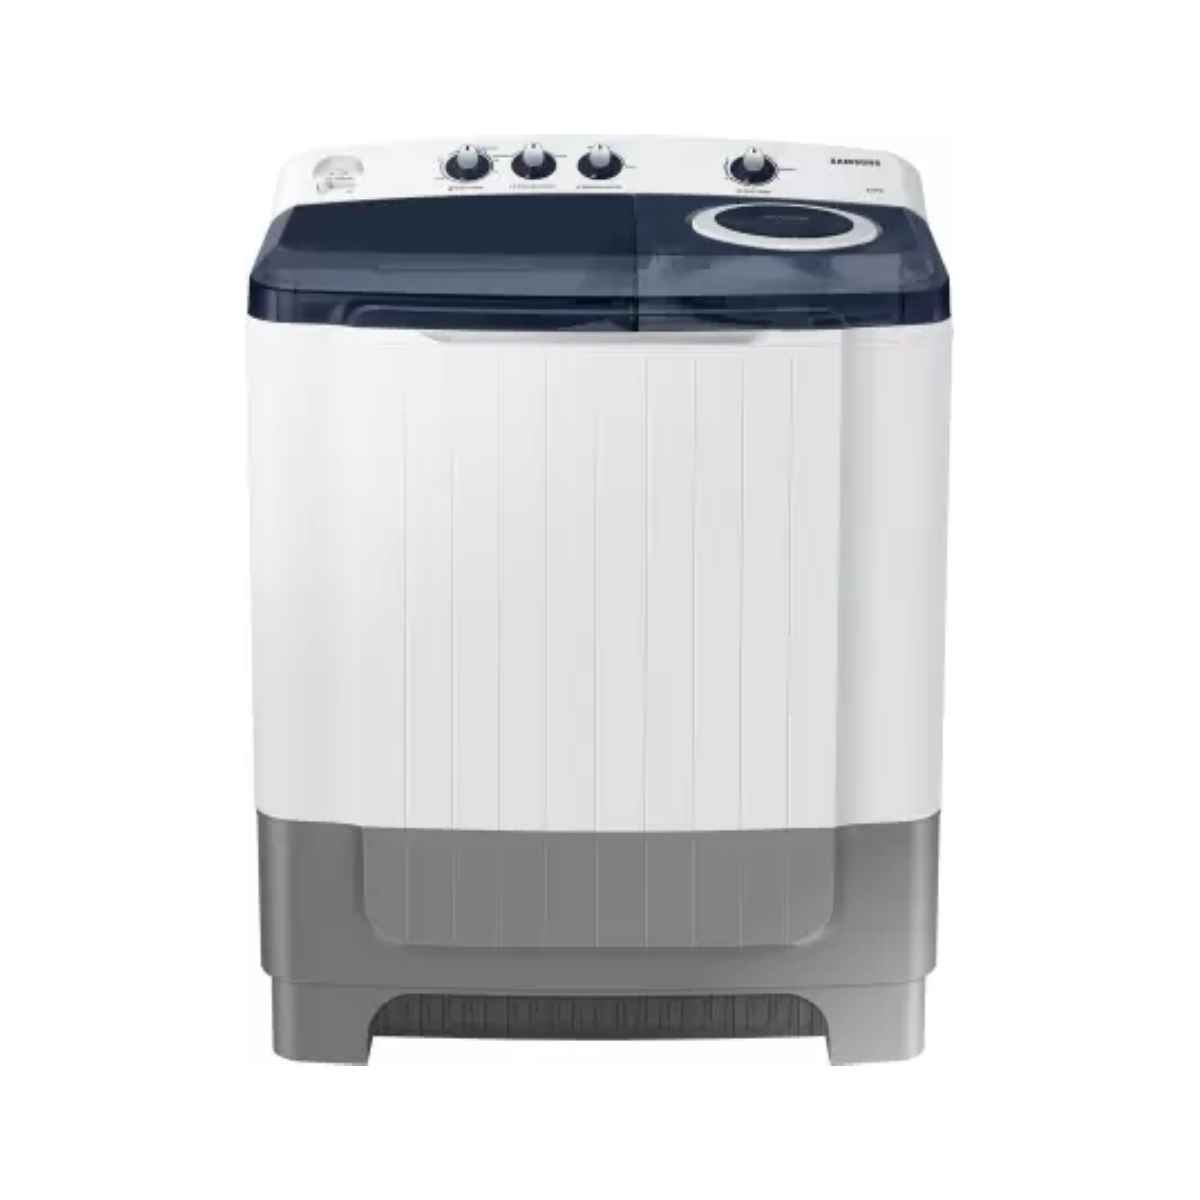 சேம்சங் 8 kg Semi Automatic மேலே Load Washing machine (WT80R4200LG/TL) 